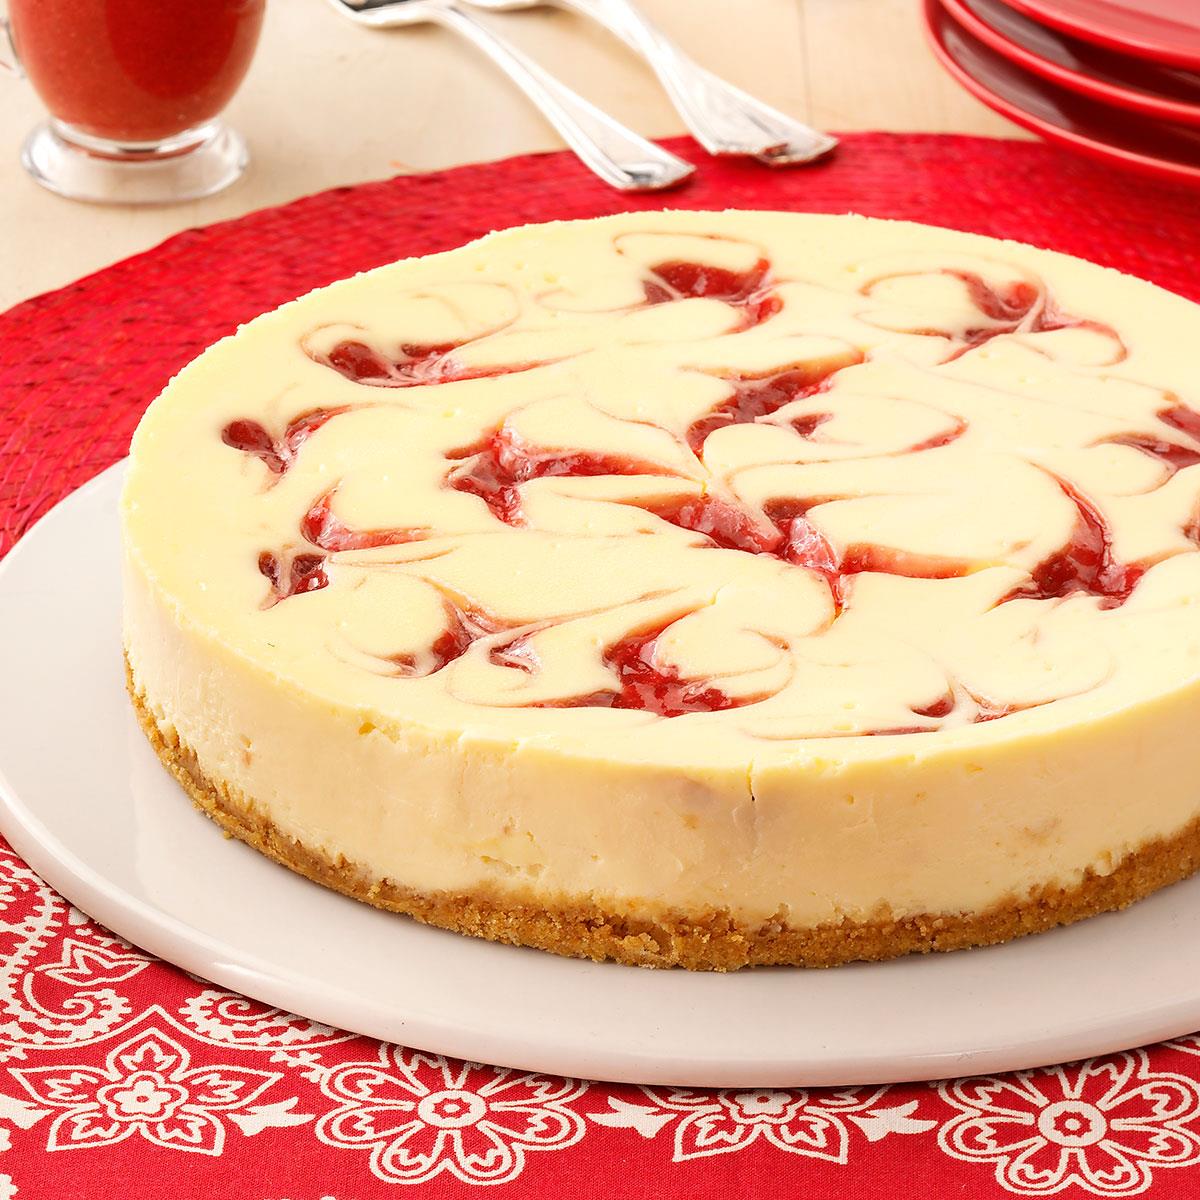 Strawberry Cheesecake Swirl Recipe: How to Make It